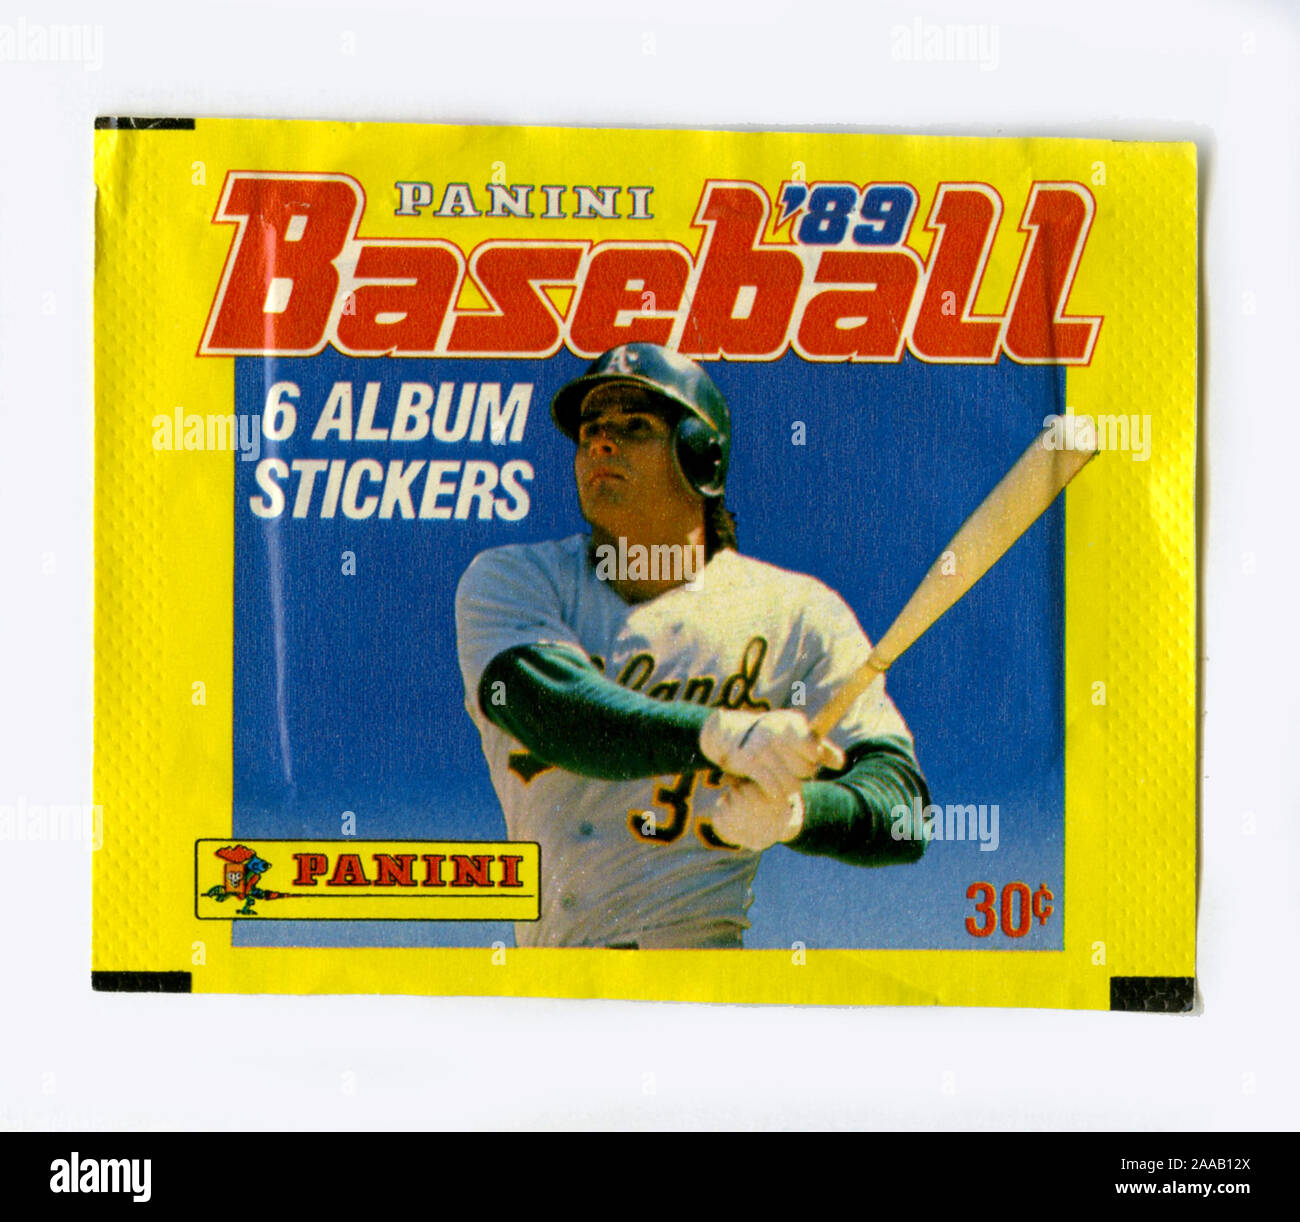 Un ensemble d'autocollants Panini collection baseball marque à partir de 1989 avec Oakland A's paresseux Jose Conseco sur l'emballage. Canseco a ensuite connu pour avoir été en utilisant des stéroïdes pour améliorer son rendement ainsi que d'autres athlètes de la période. Banque D'Images